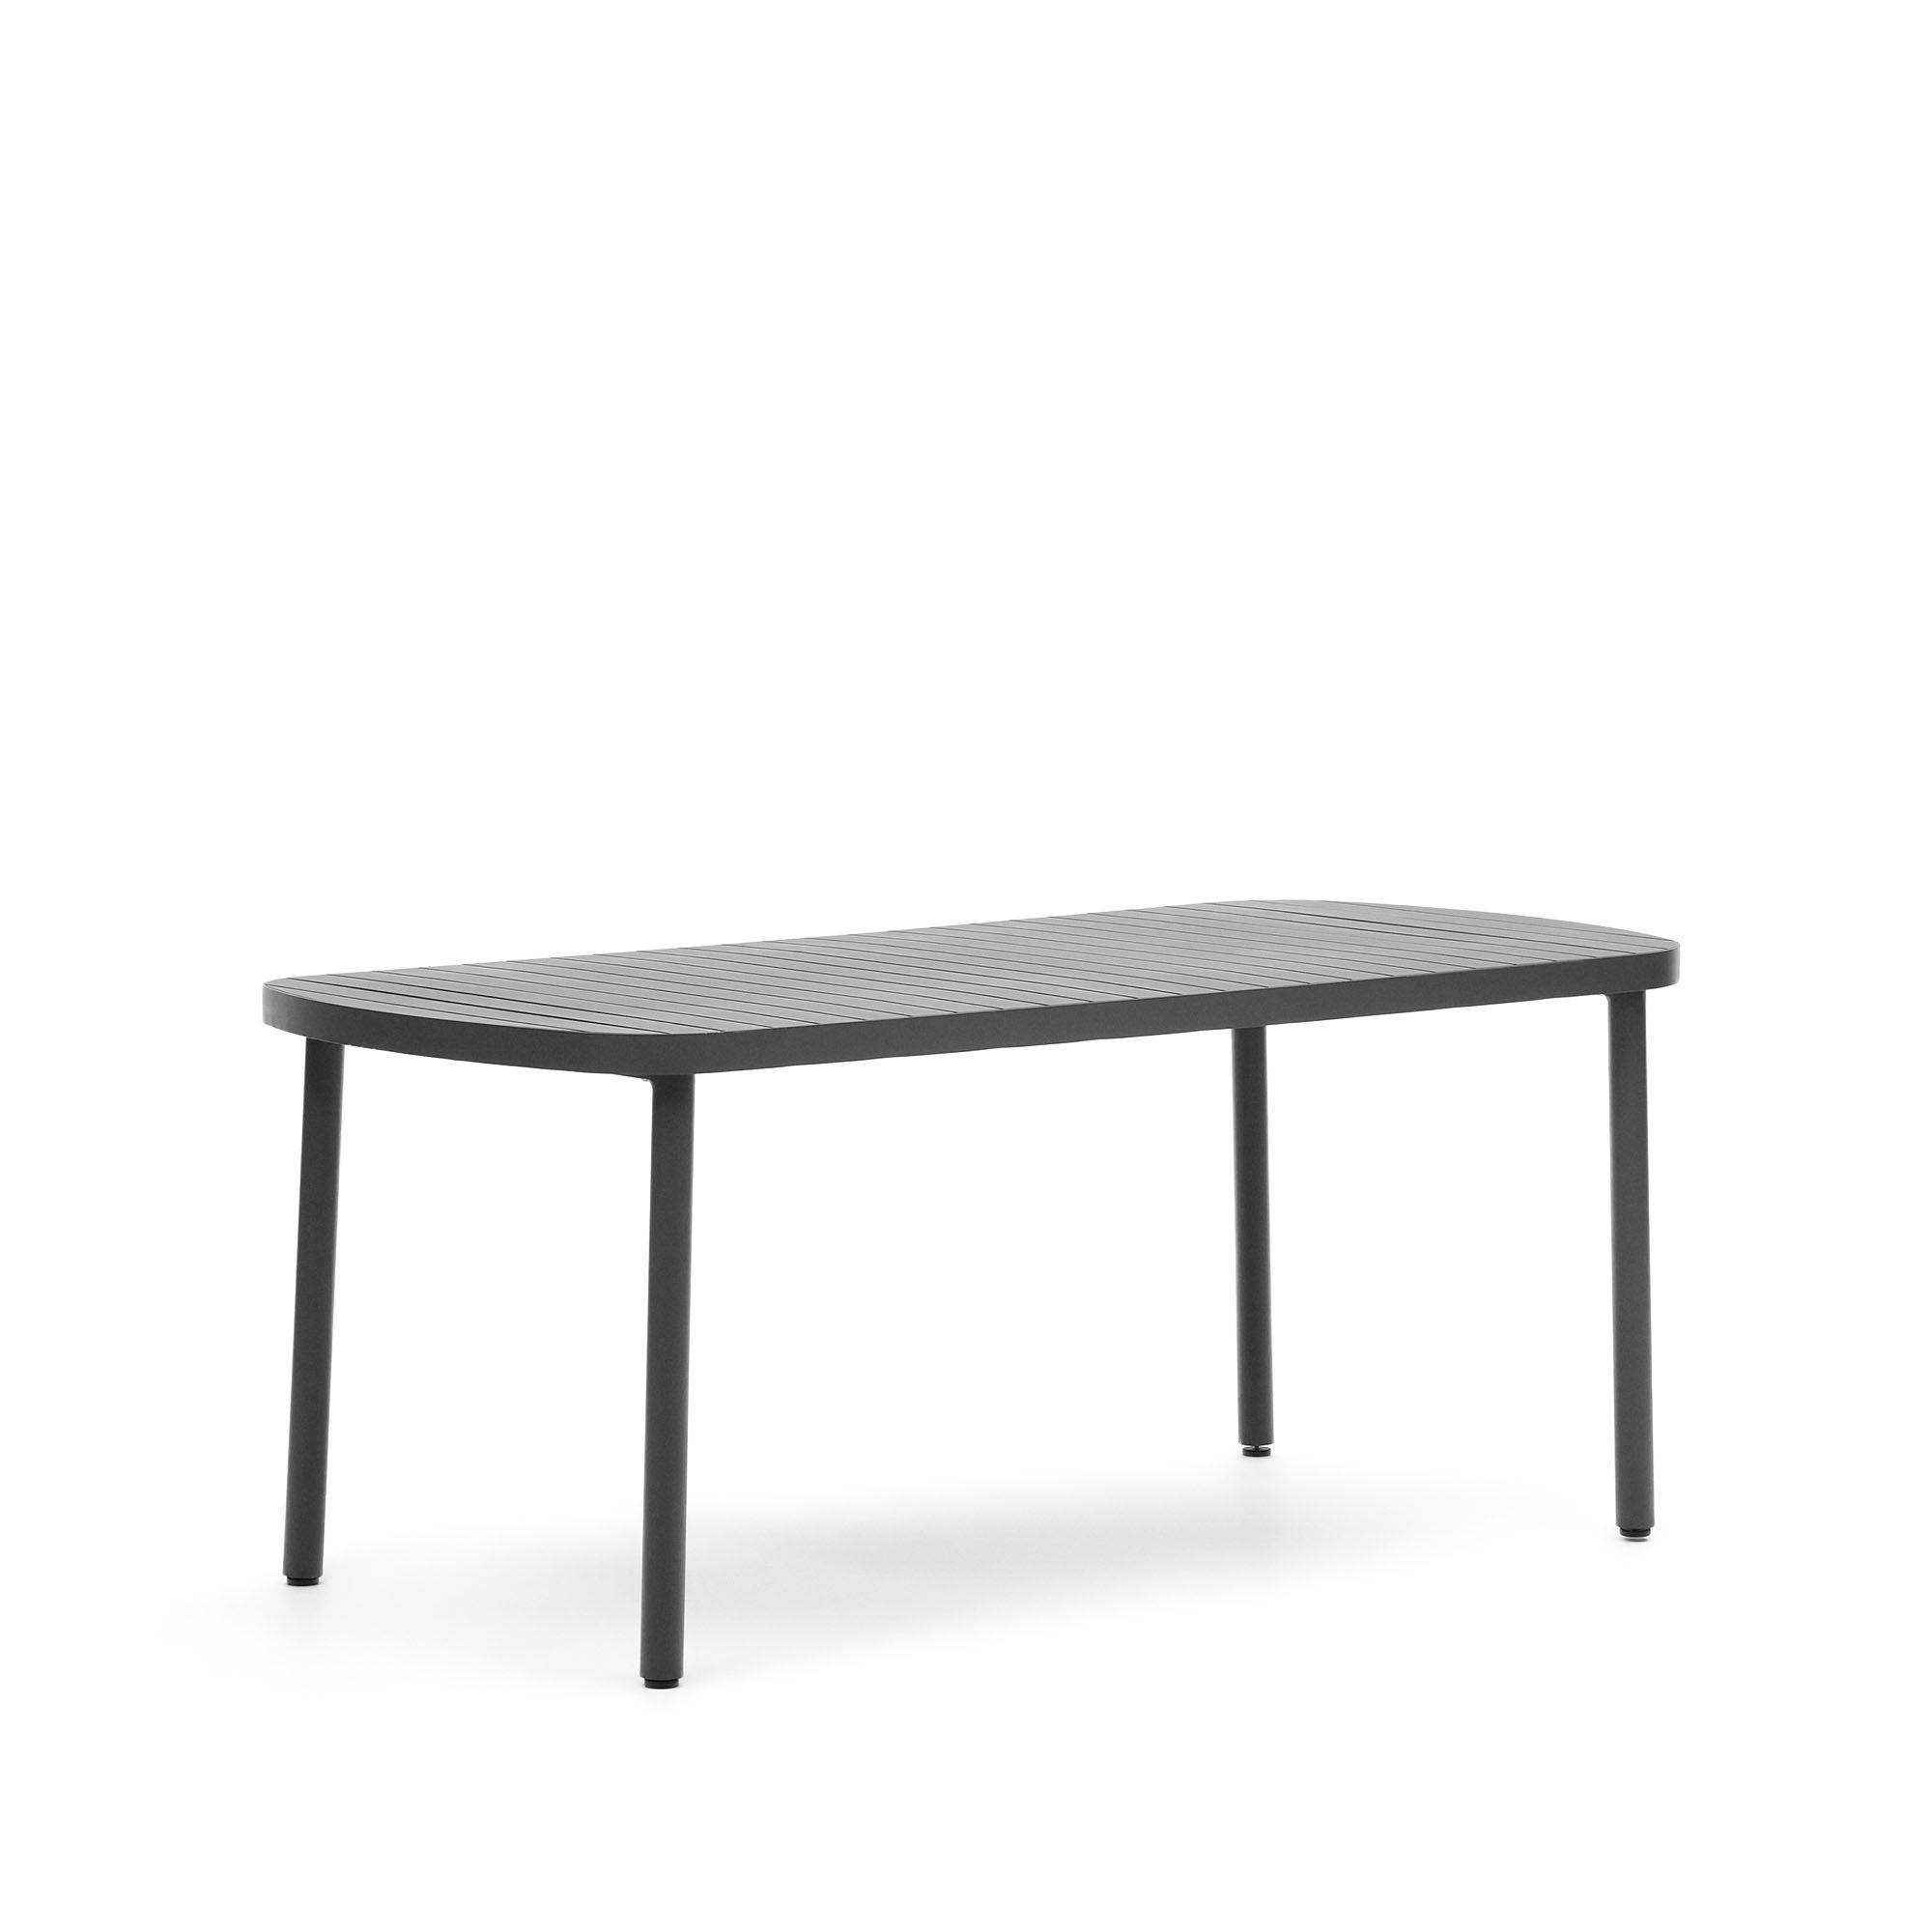 Joncols kültéri alumínium asztal, 180 x 90 cm, szürke színű porszórt bevonattal